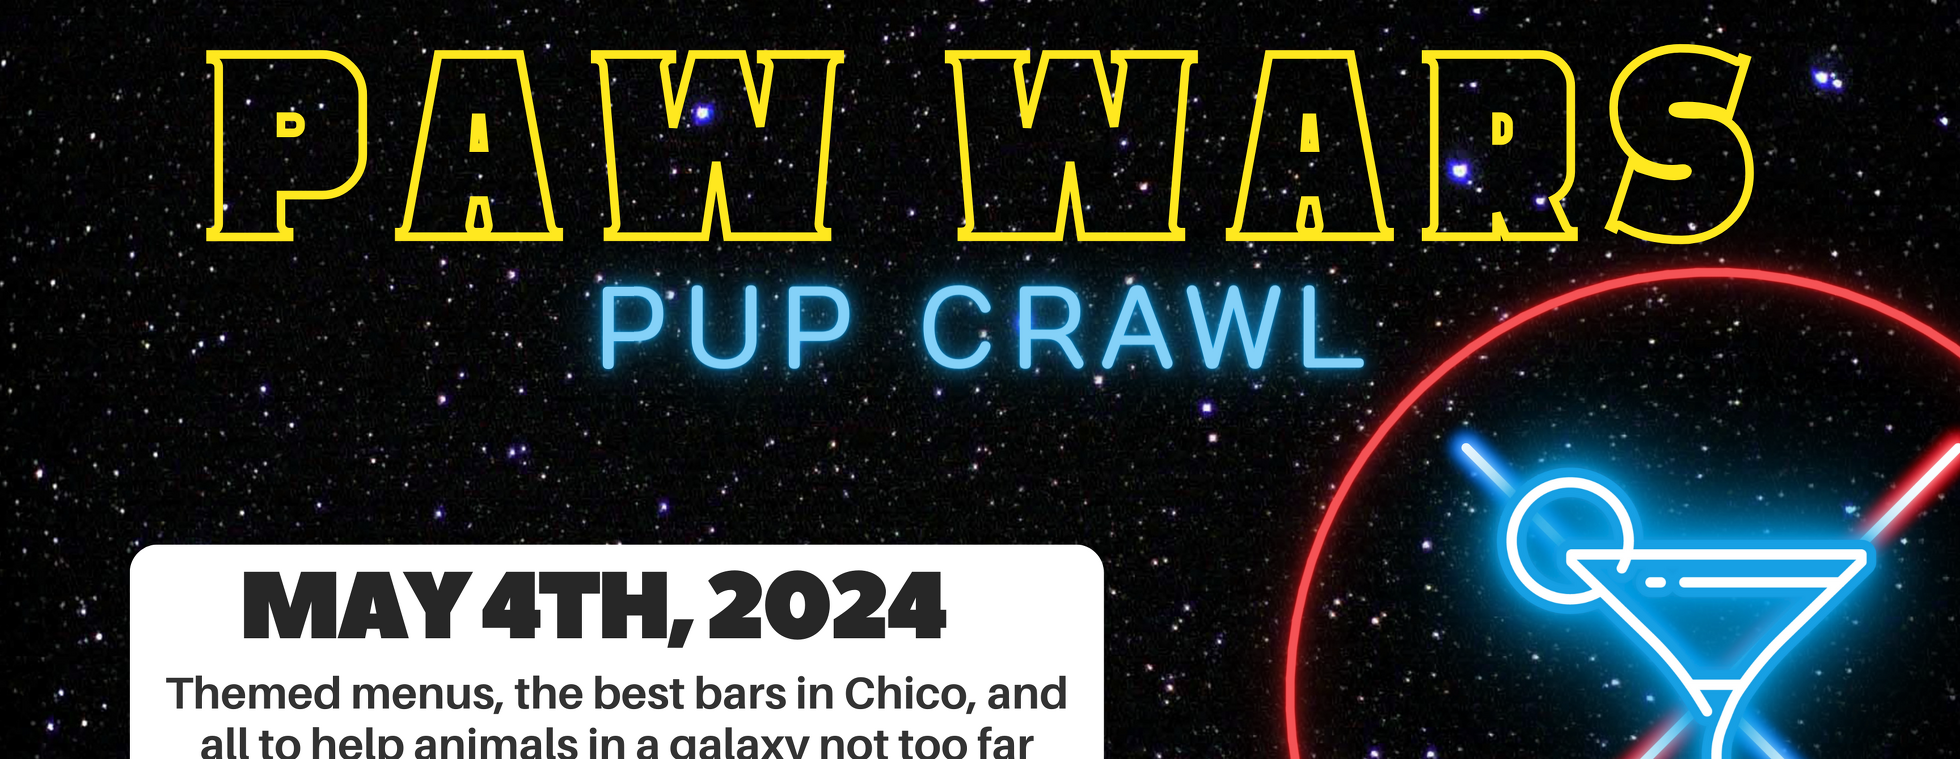 Paw Wars Pup Crawl 2024